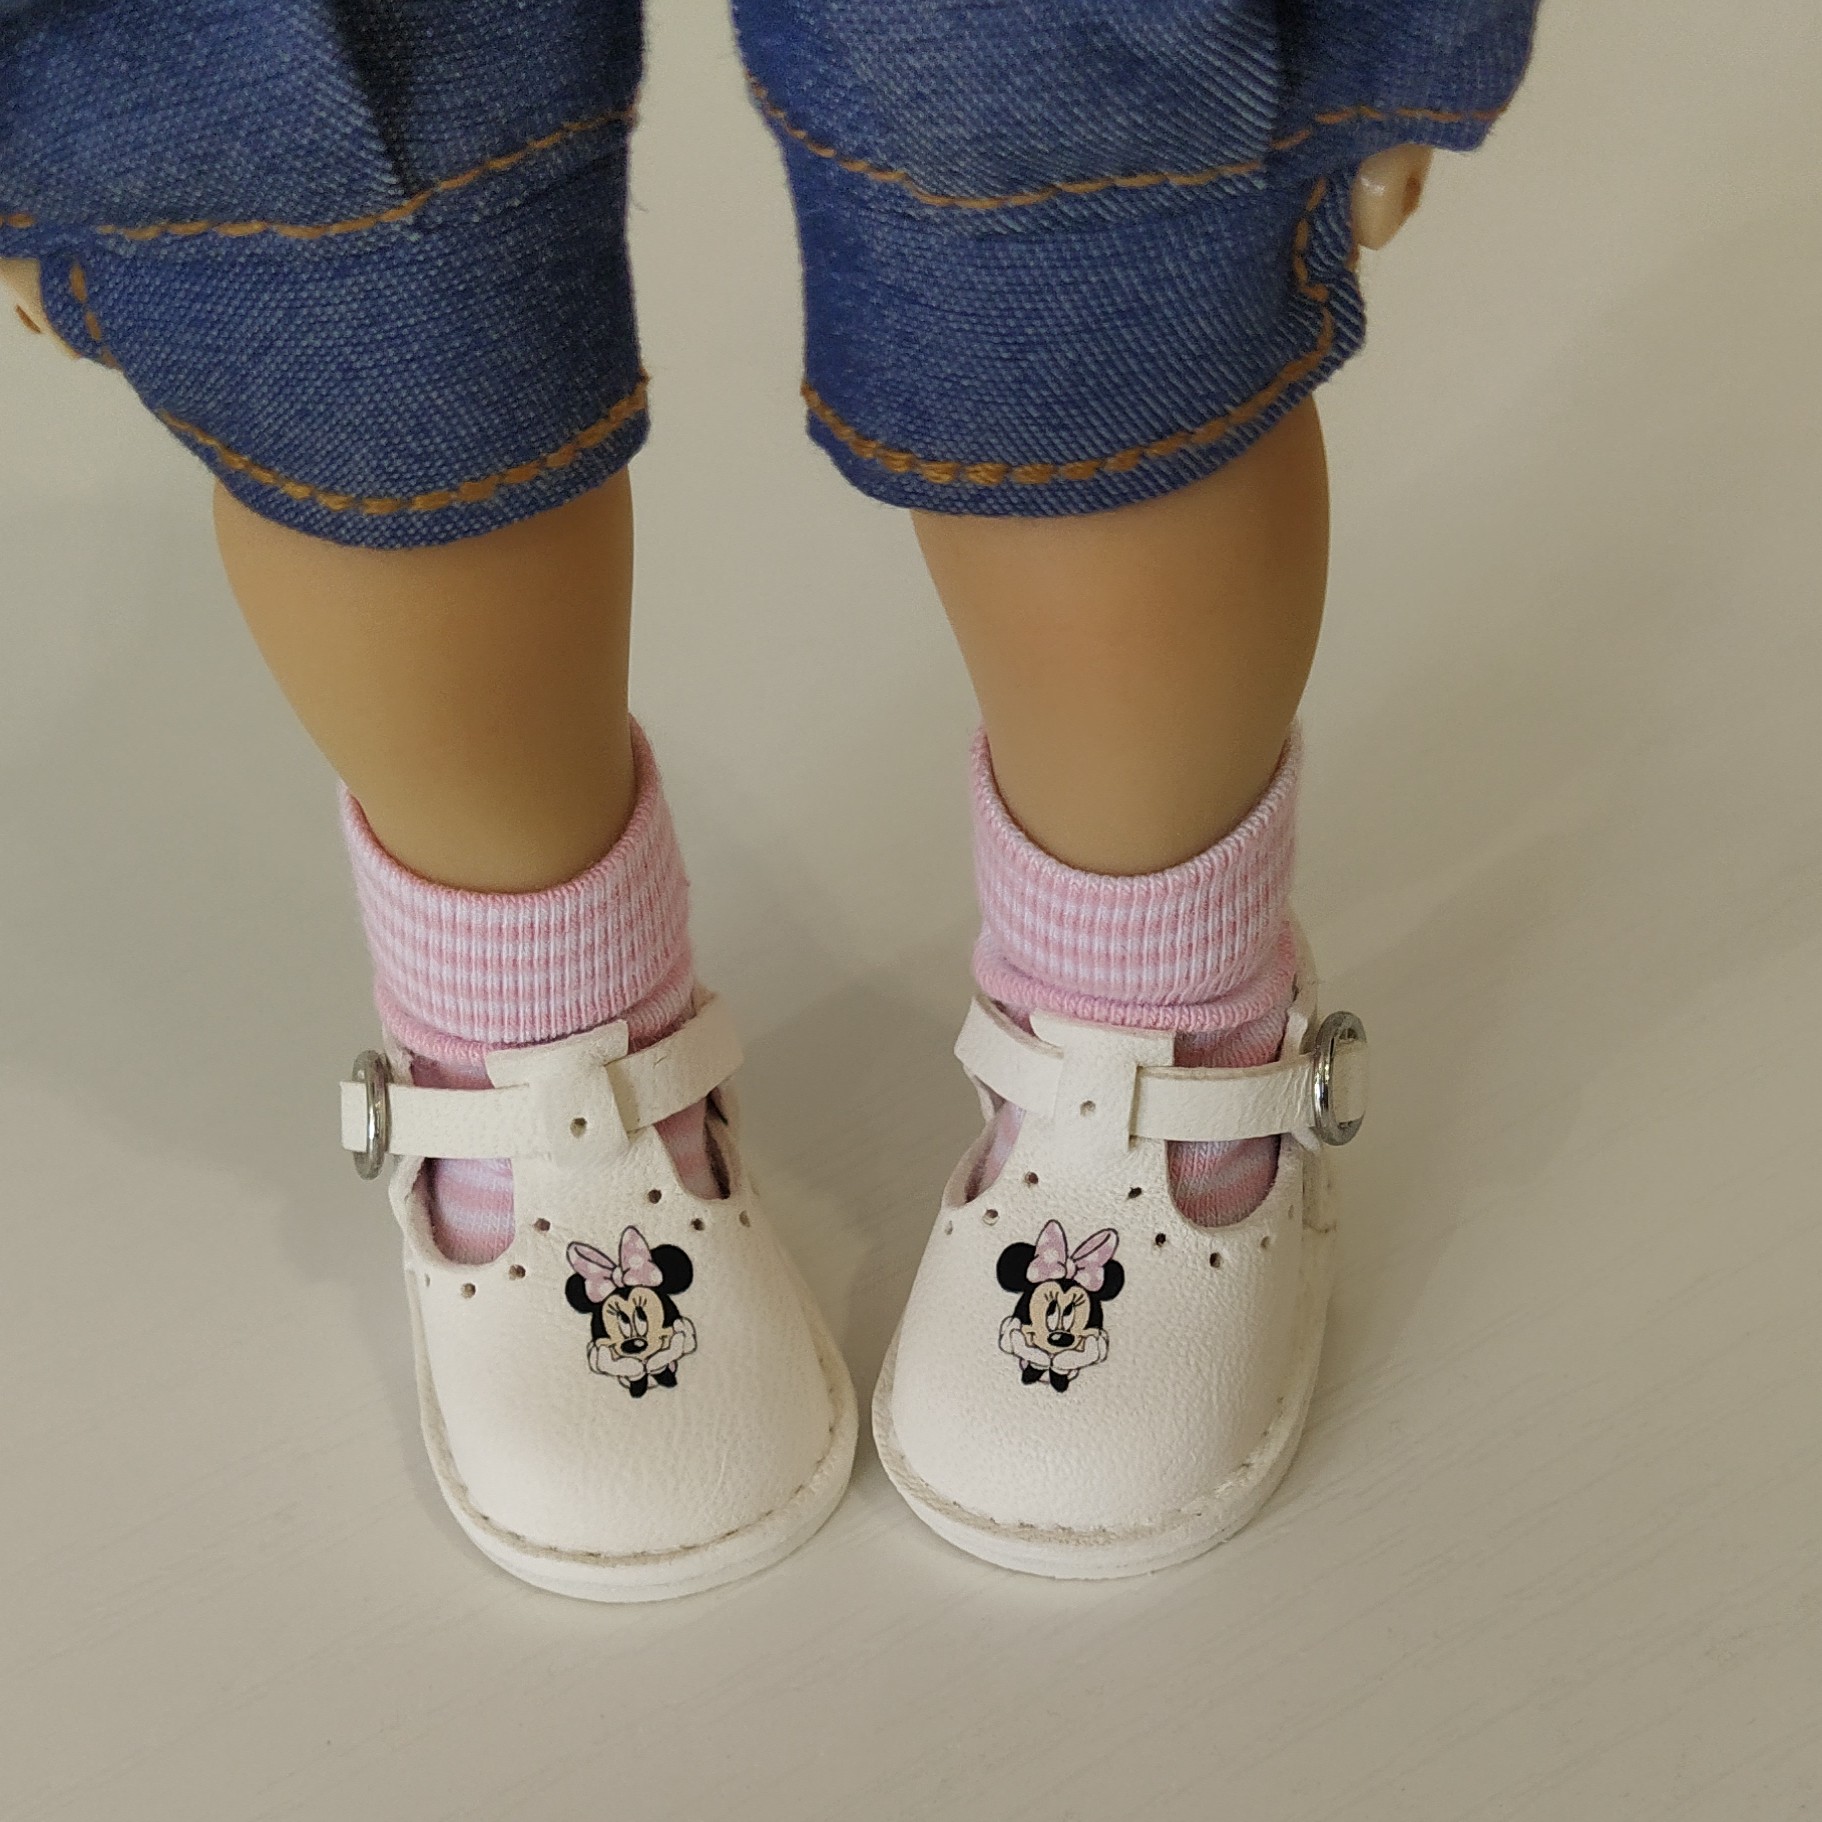 Dumpling Meadow Doll shoes with socks by JuliDollShoes - DailyDoll Shop